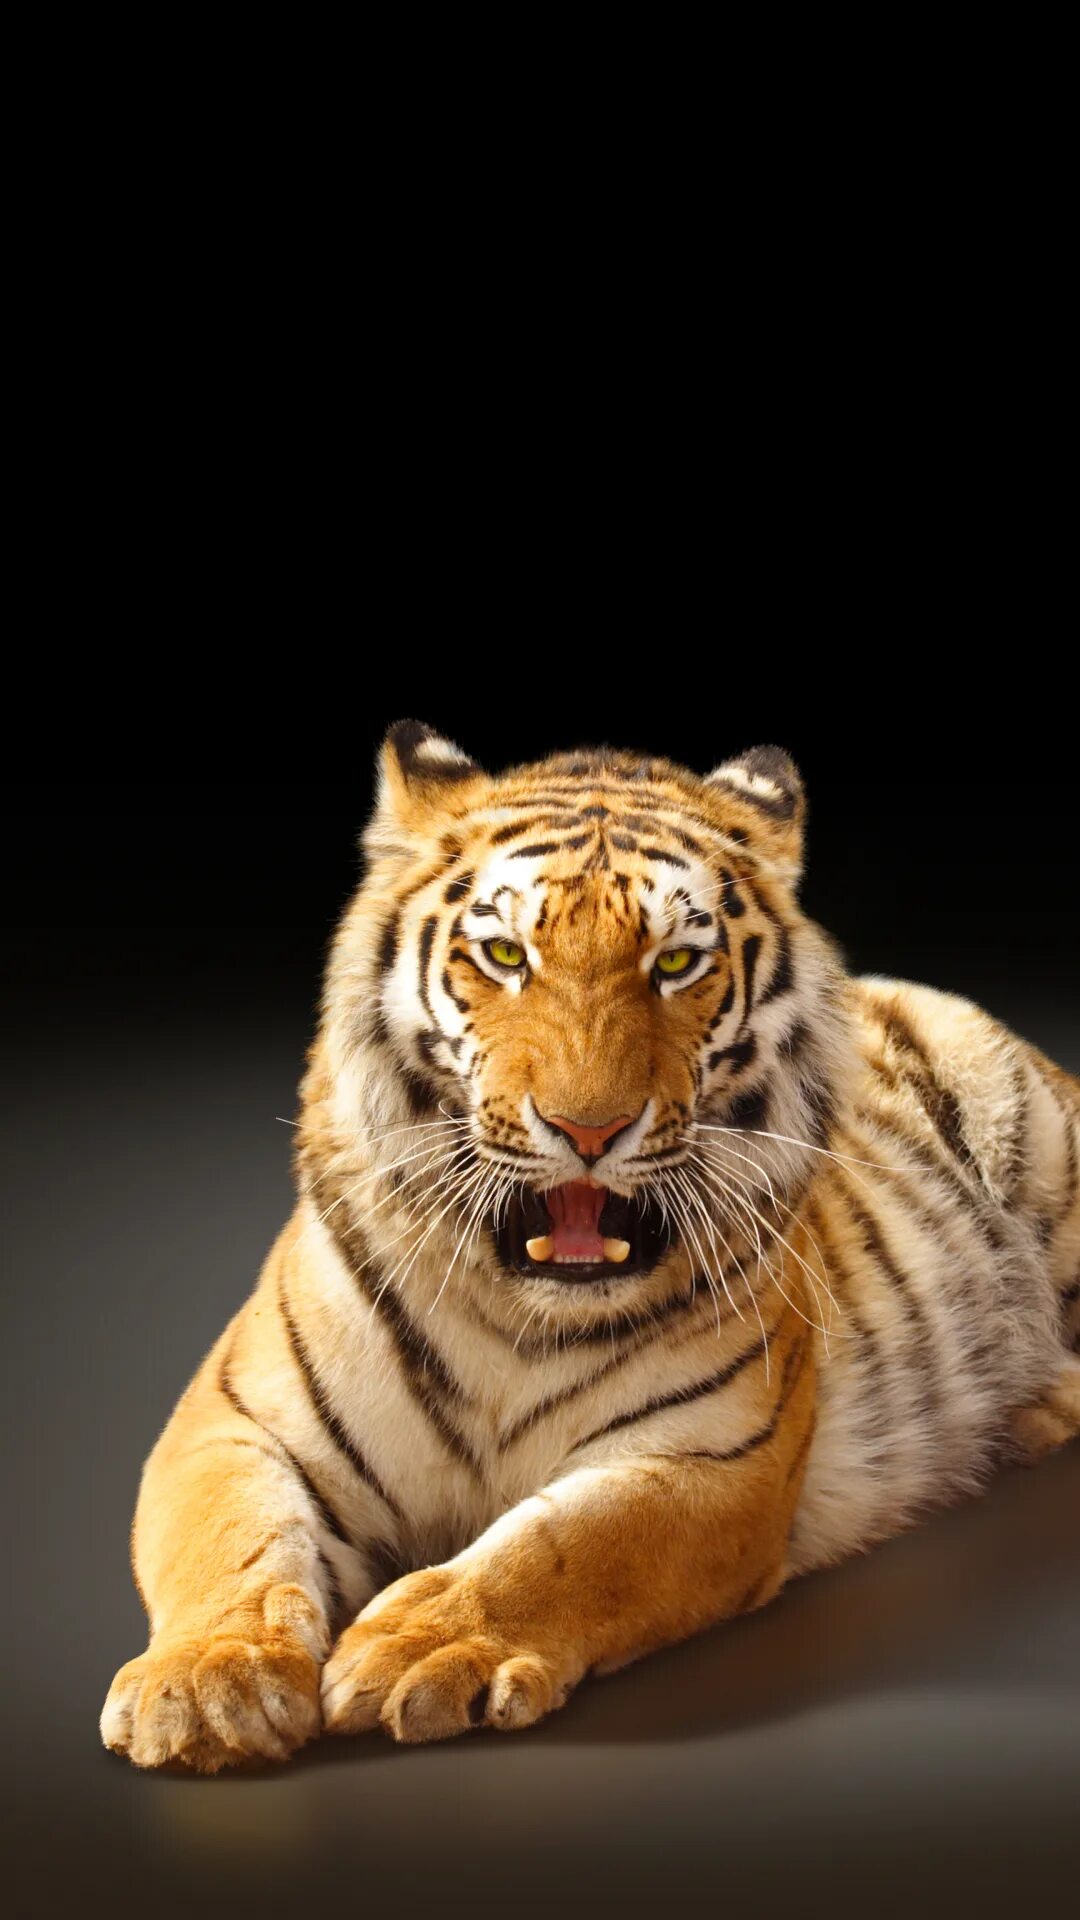 Заставки на телефон тиграми бесплатные. Тигр. Тигр на заставку. Тигр фон. Тигр большая кошка.